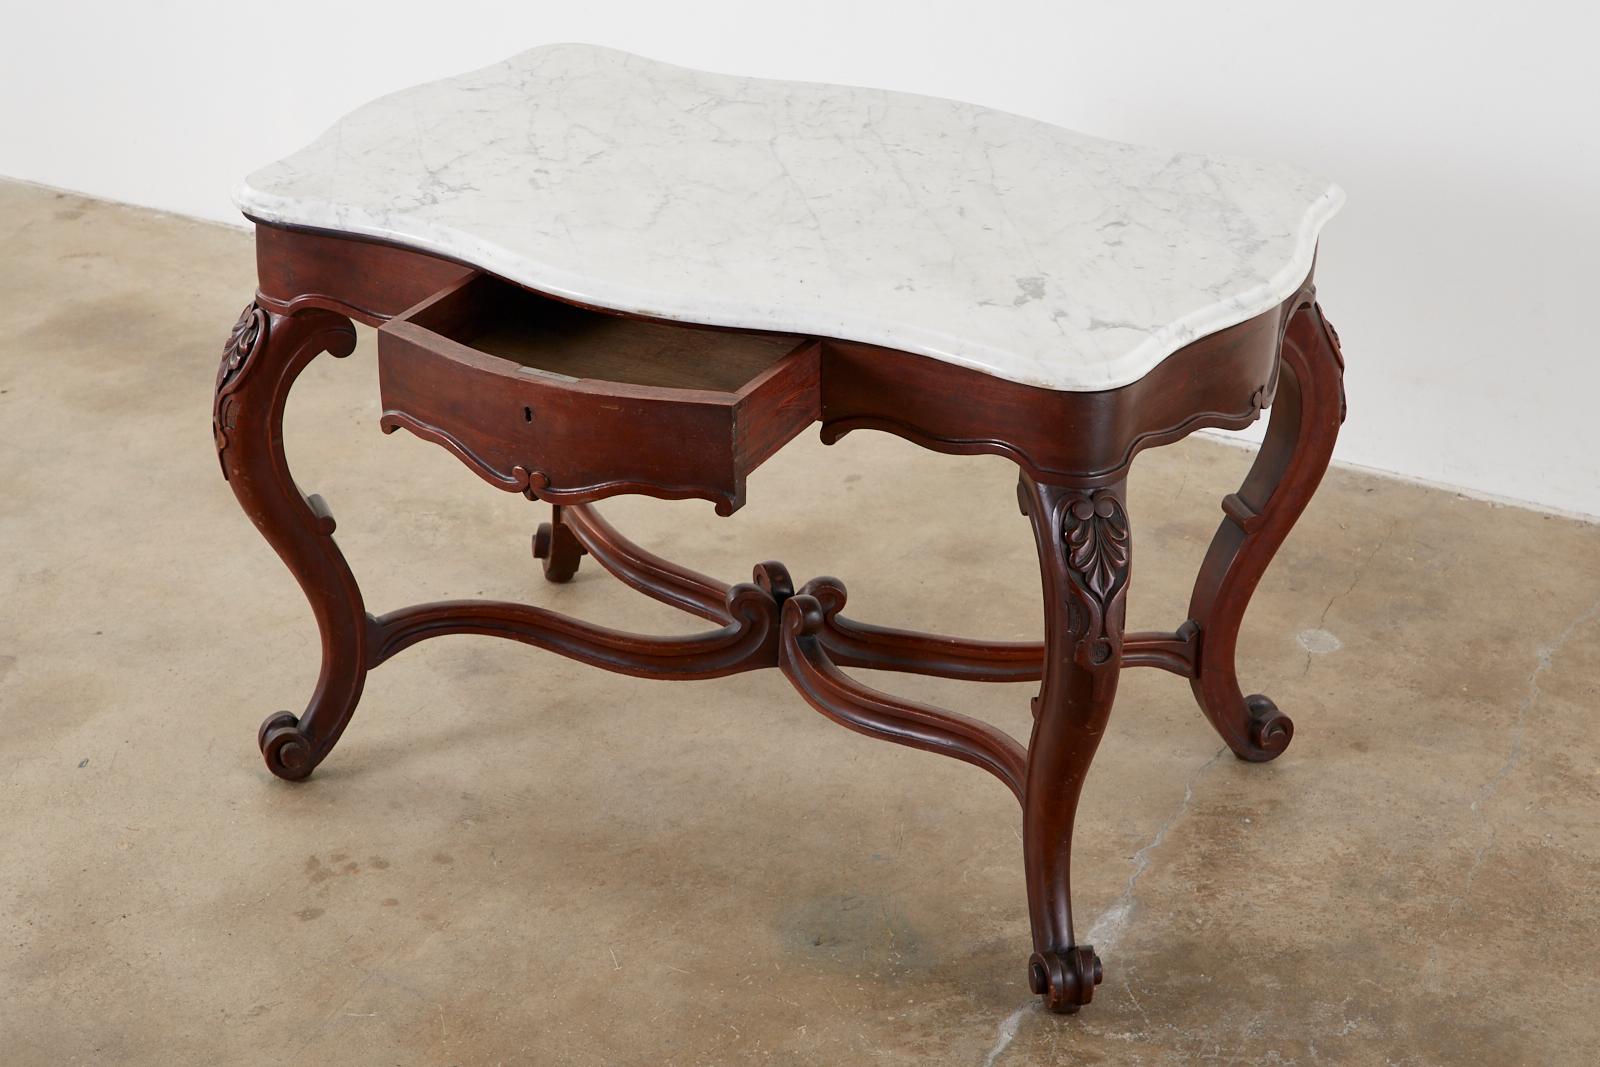 Geschwungener englischer viktorianischer Bibliothekstisch oder Schreibtisch aus dem 19. Jahrhundert. Der Tisch besteht aus einer 1